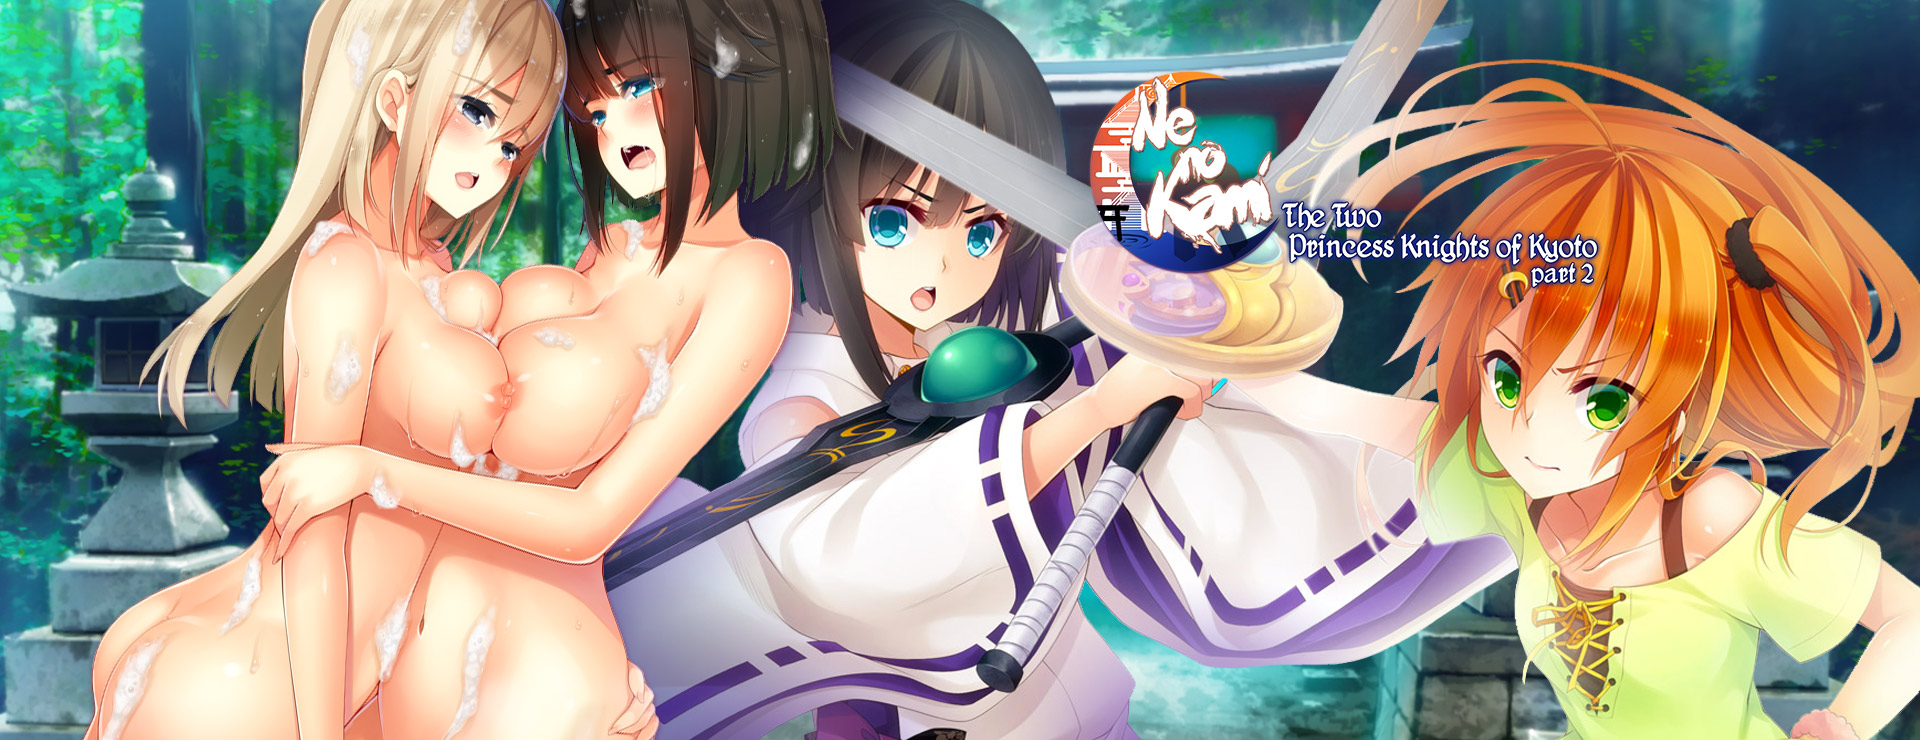 Ne No Kami - The Two Princess Knight of Kyoto Part 2 - Visual Novel Game